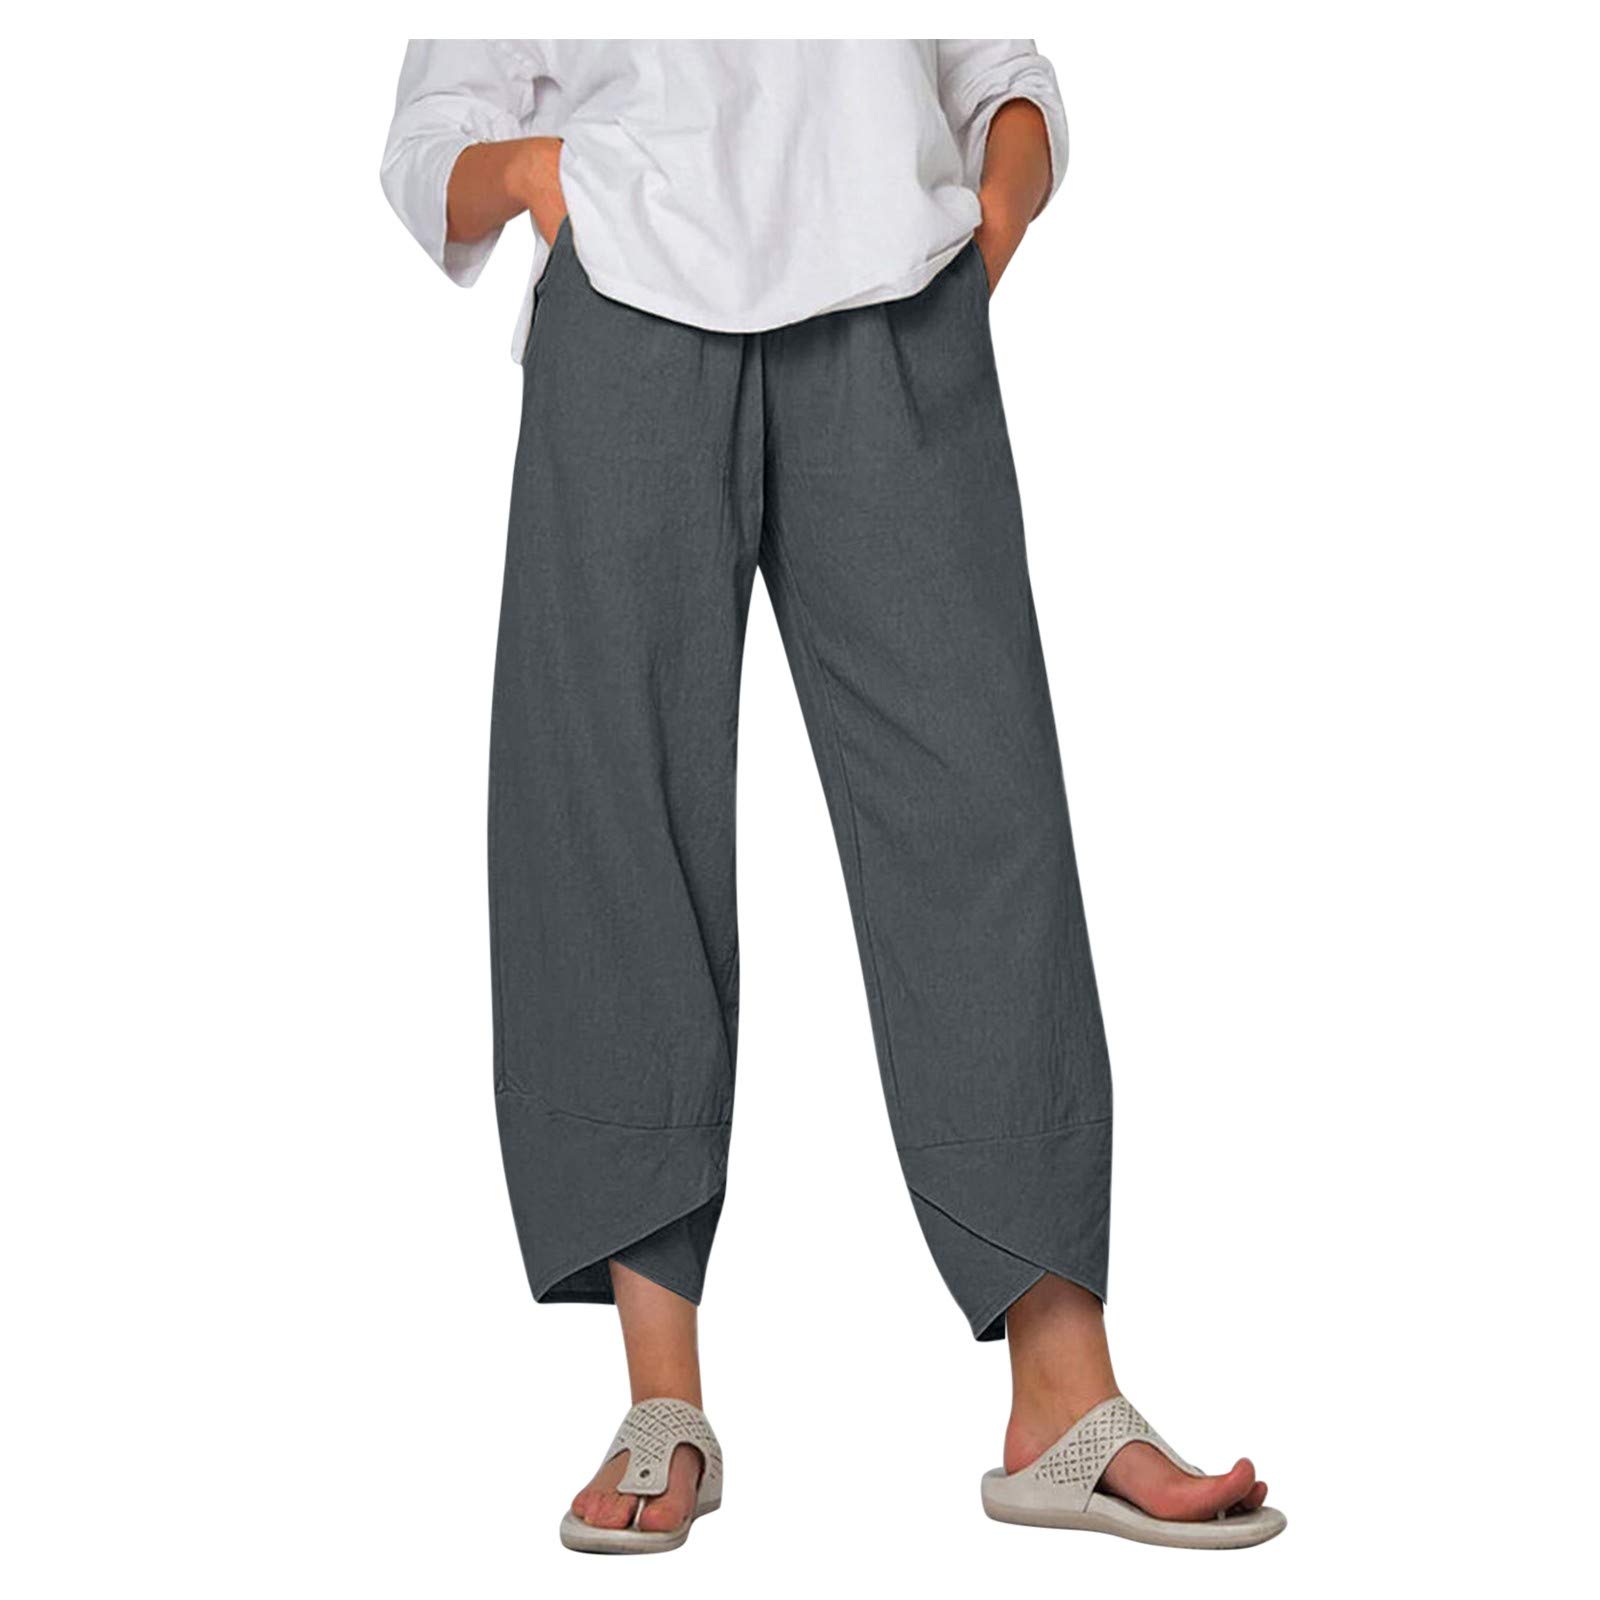 Summer Women's Pants Cotton Linen Large Size Casual Loose Ankle-length  Capri Pants Drawstring Harem Pants Women…